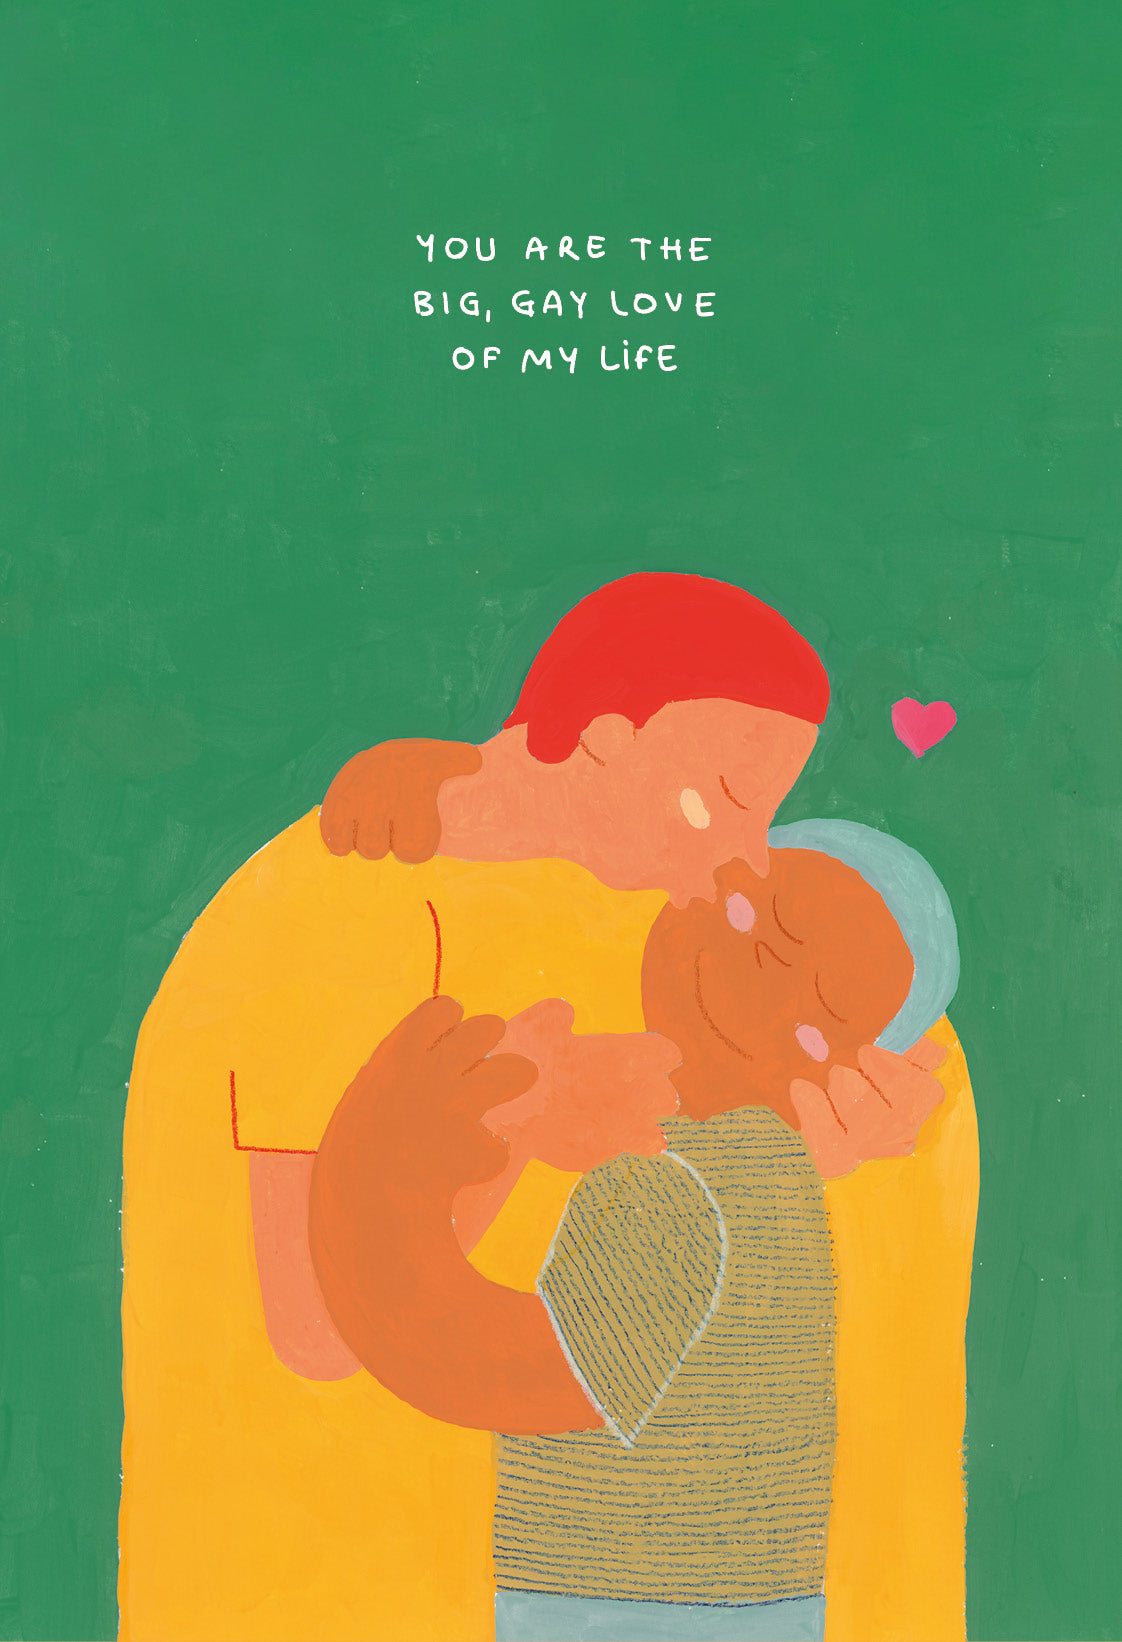 Big gay love